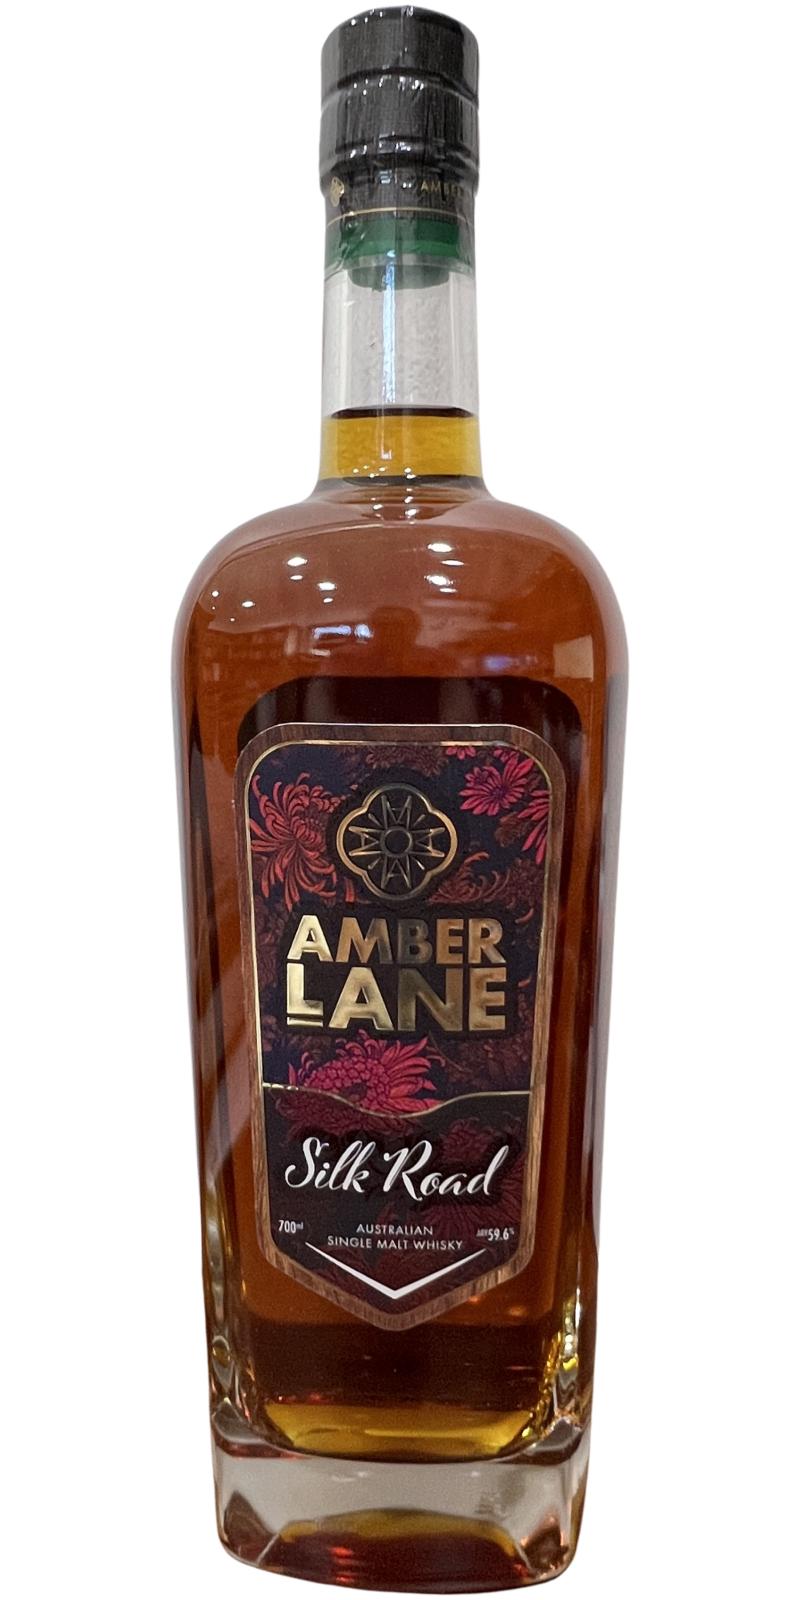 Amber Lane Silk Road